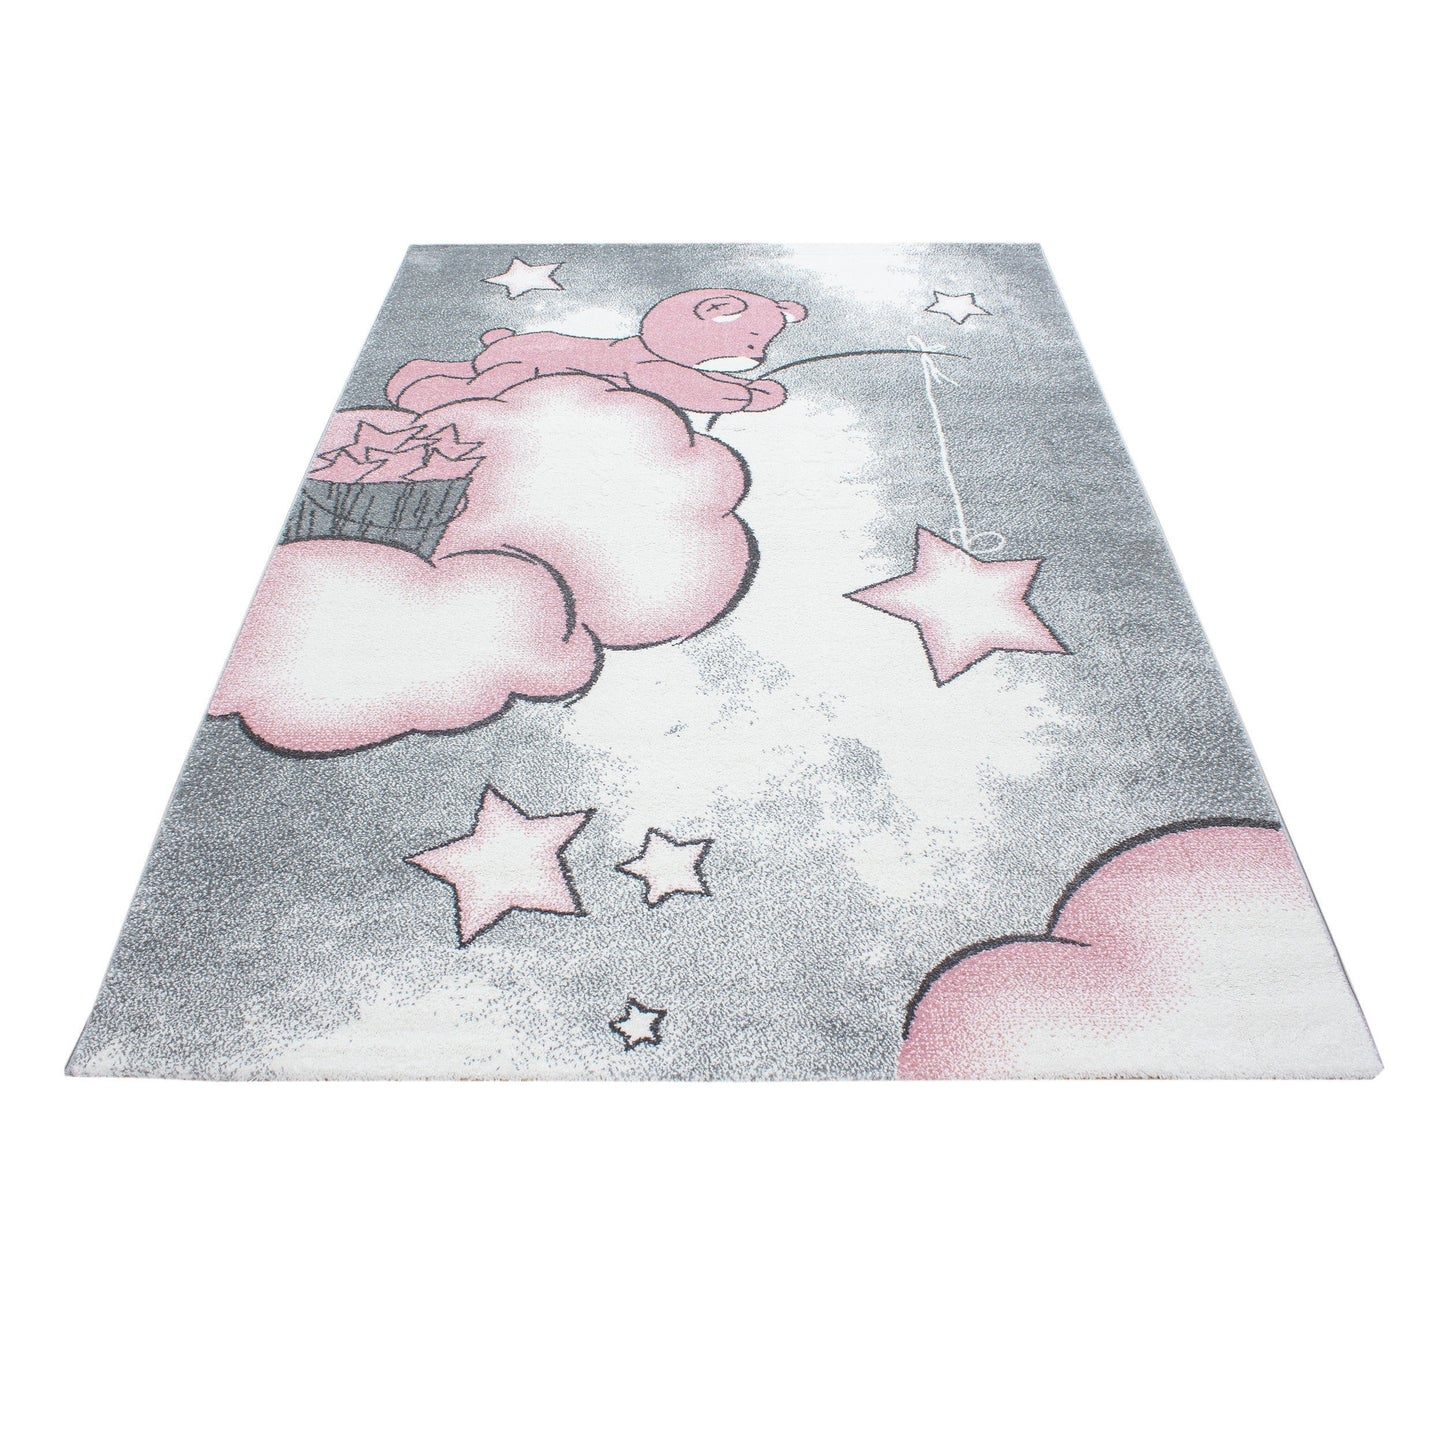 Kinderteppich Kinderzimmer Teppich Bär Wolken Stern-Angeln Grau-Weiß-Pink